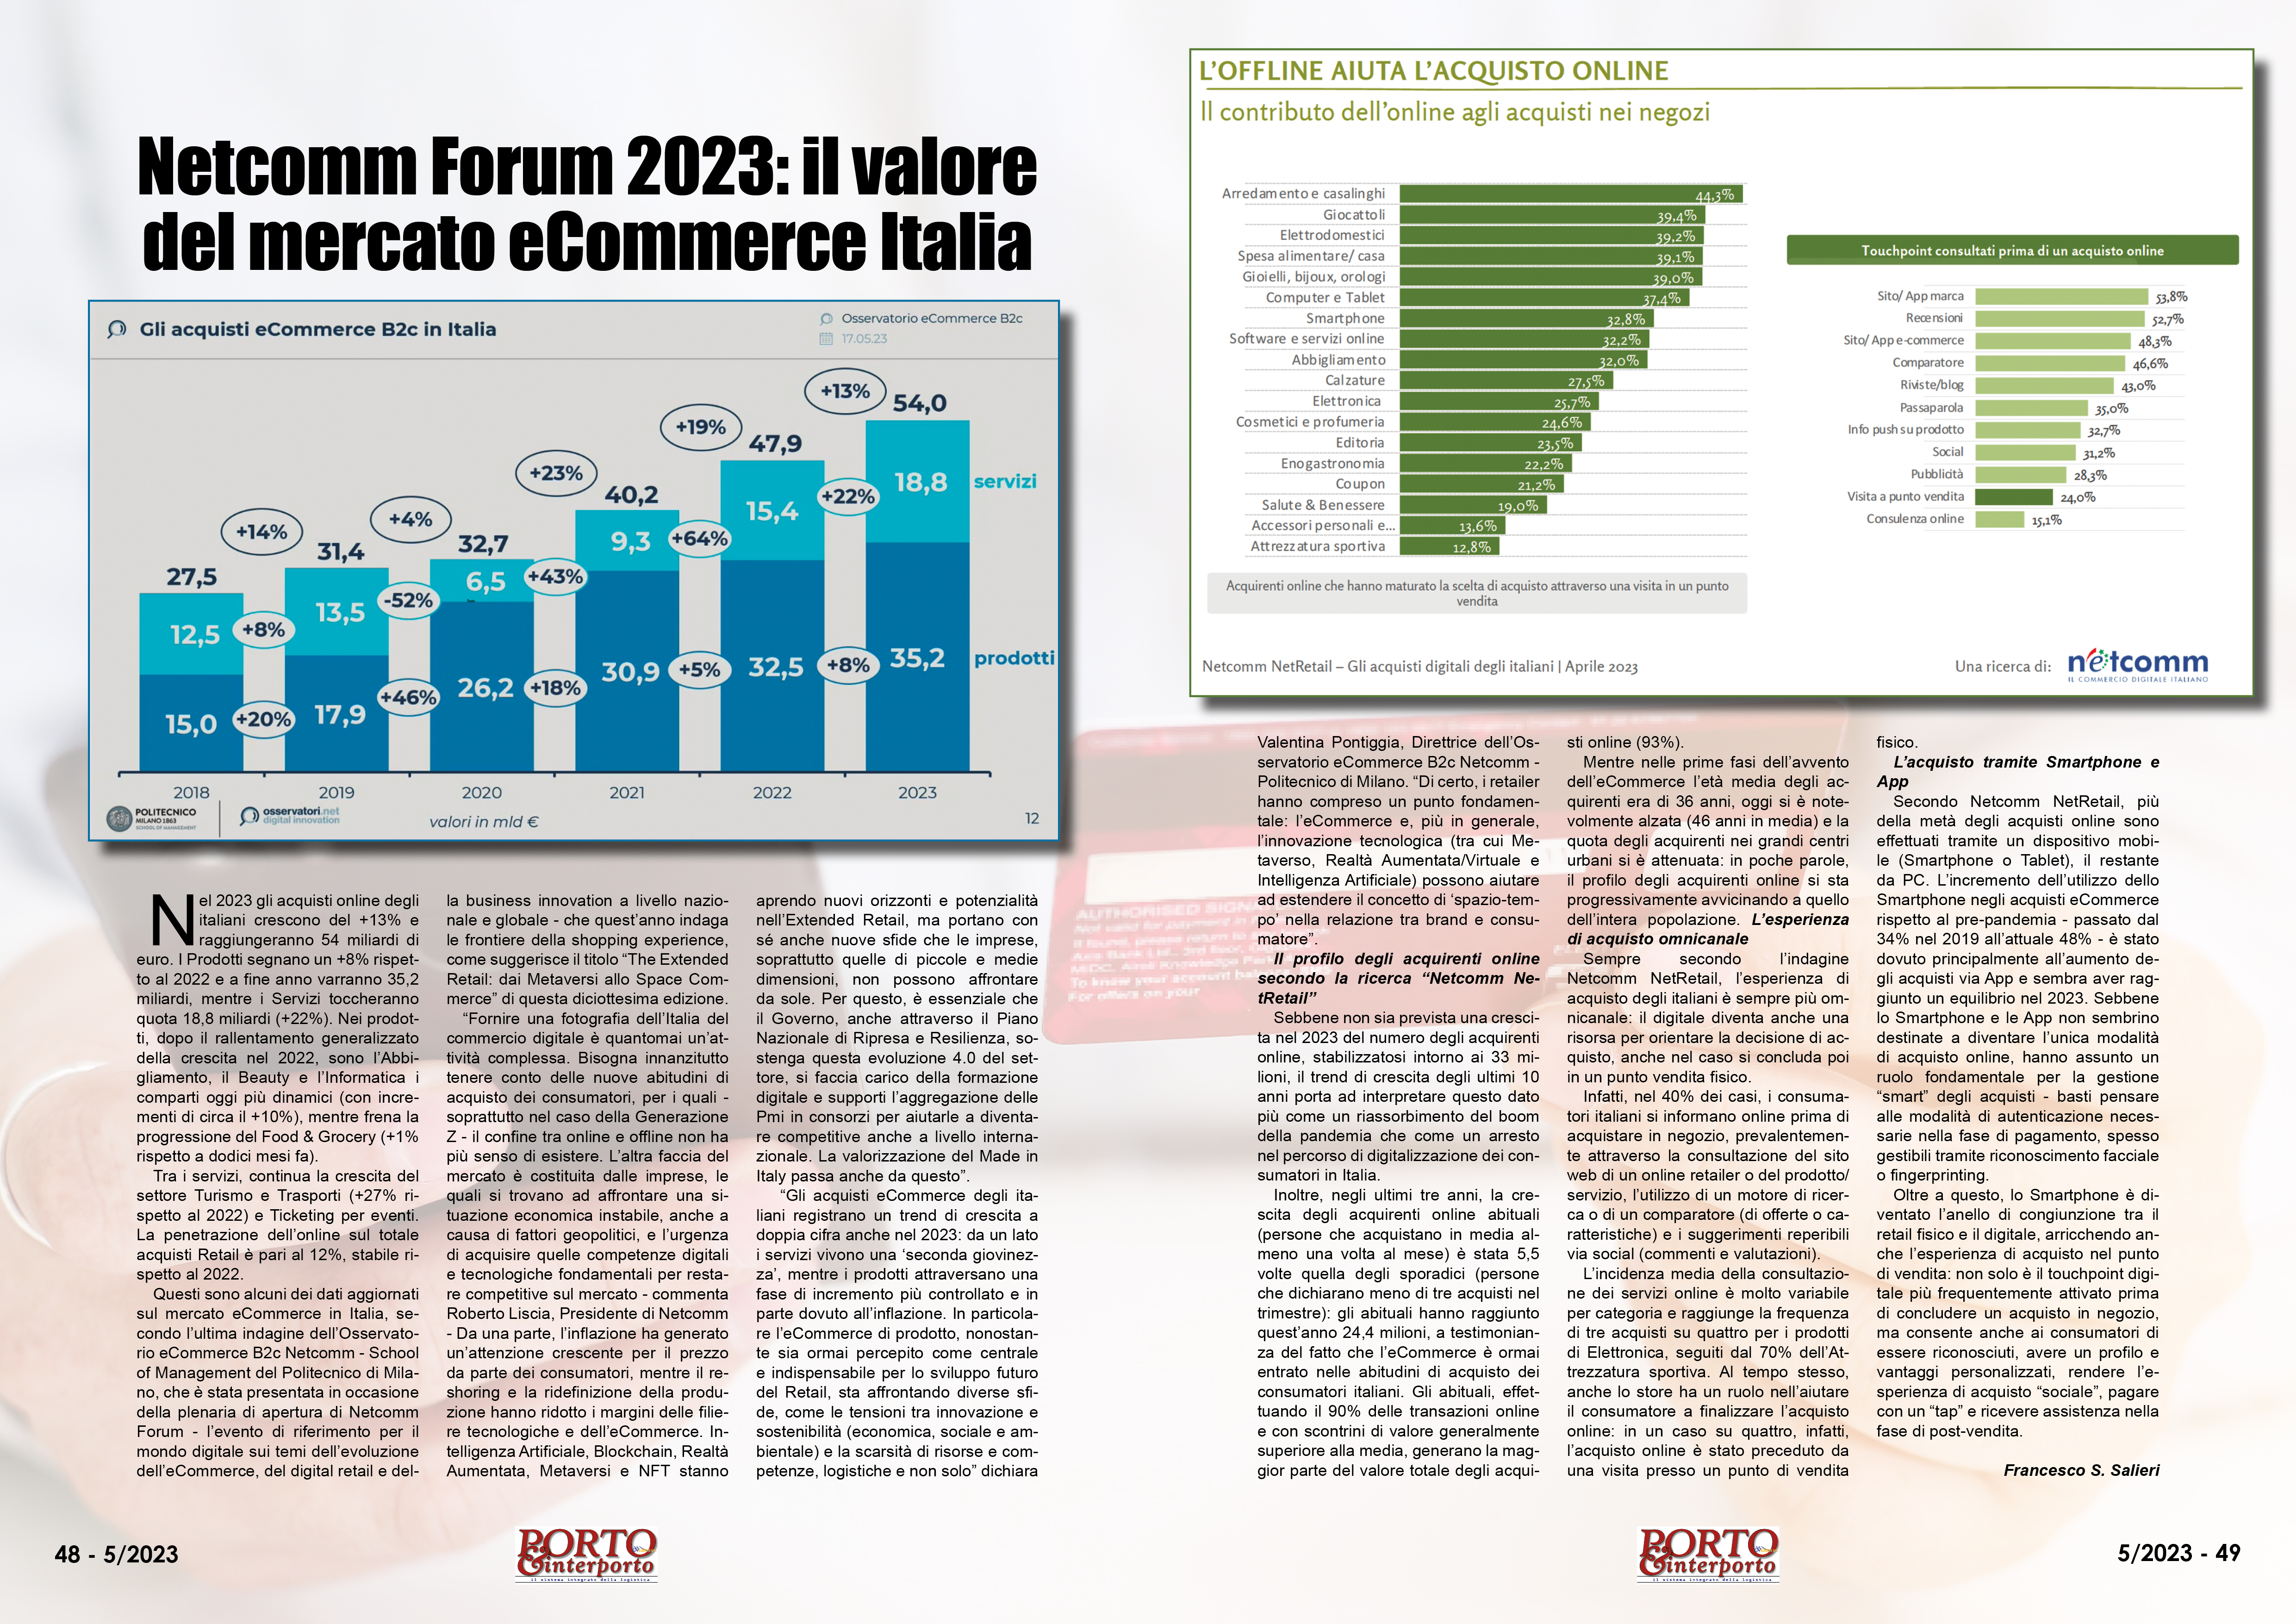 MAGGIO 2023 PAG. 48 - Netcomm Forum 2023: il valore del mercato eCommerce Italia